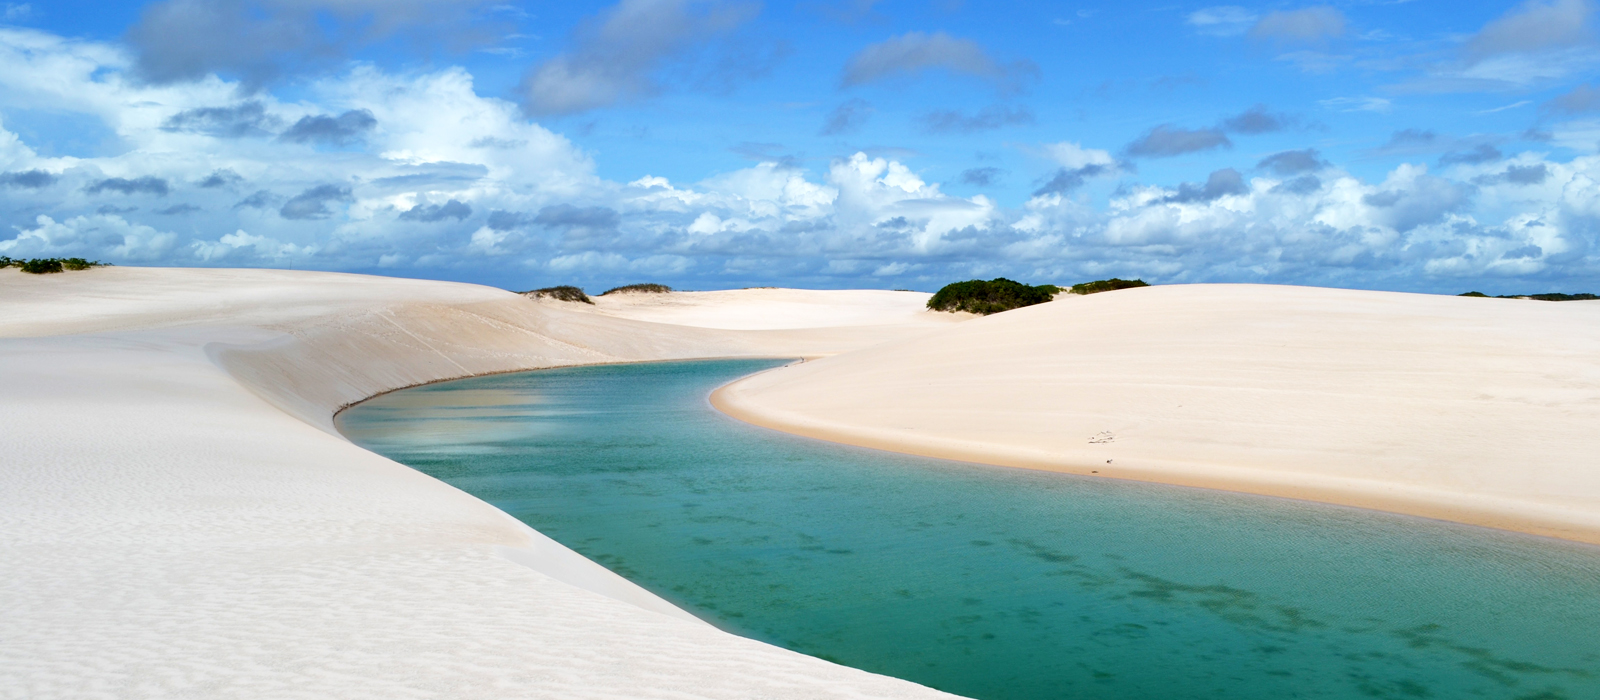 ブラジル国内サンルイス・レンソイス砂丘のモデルコース